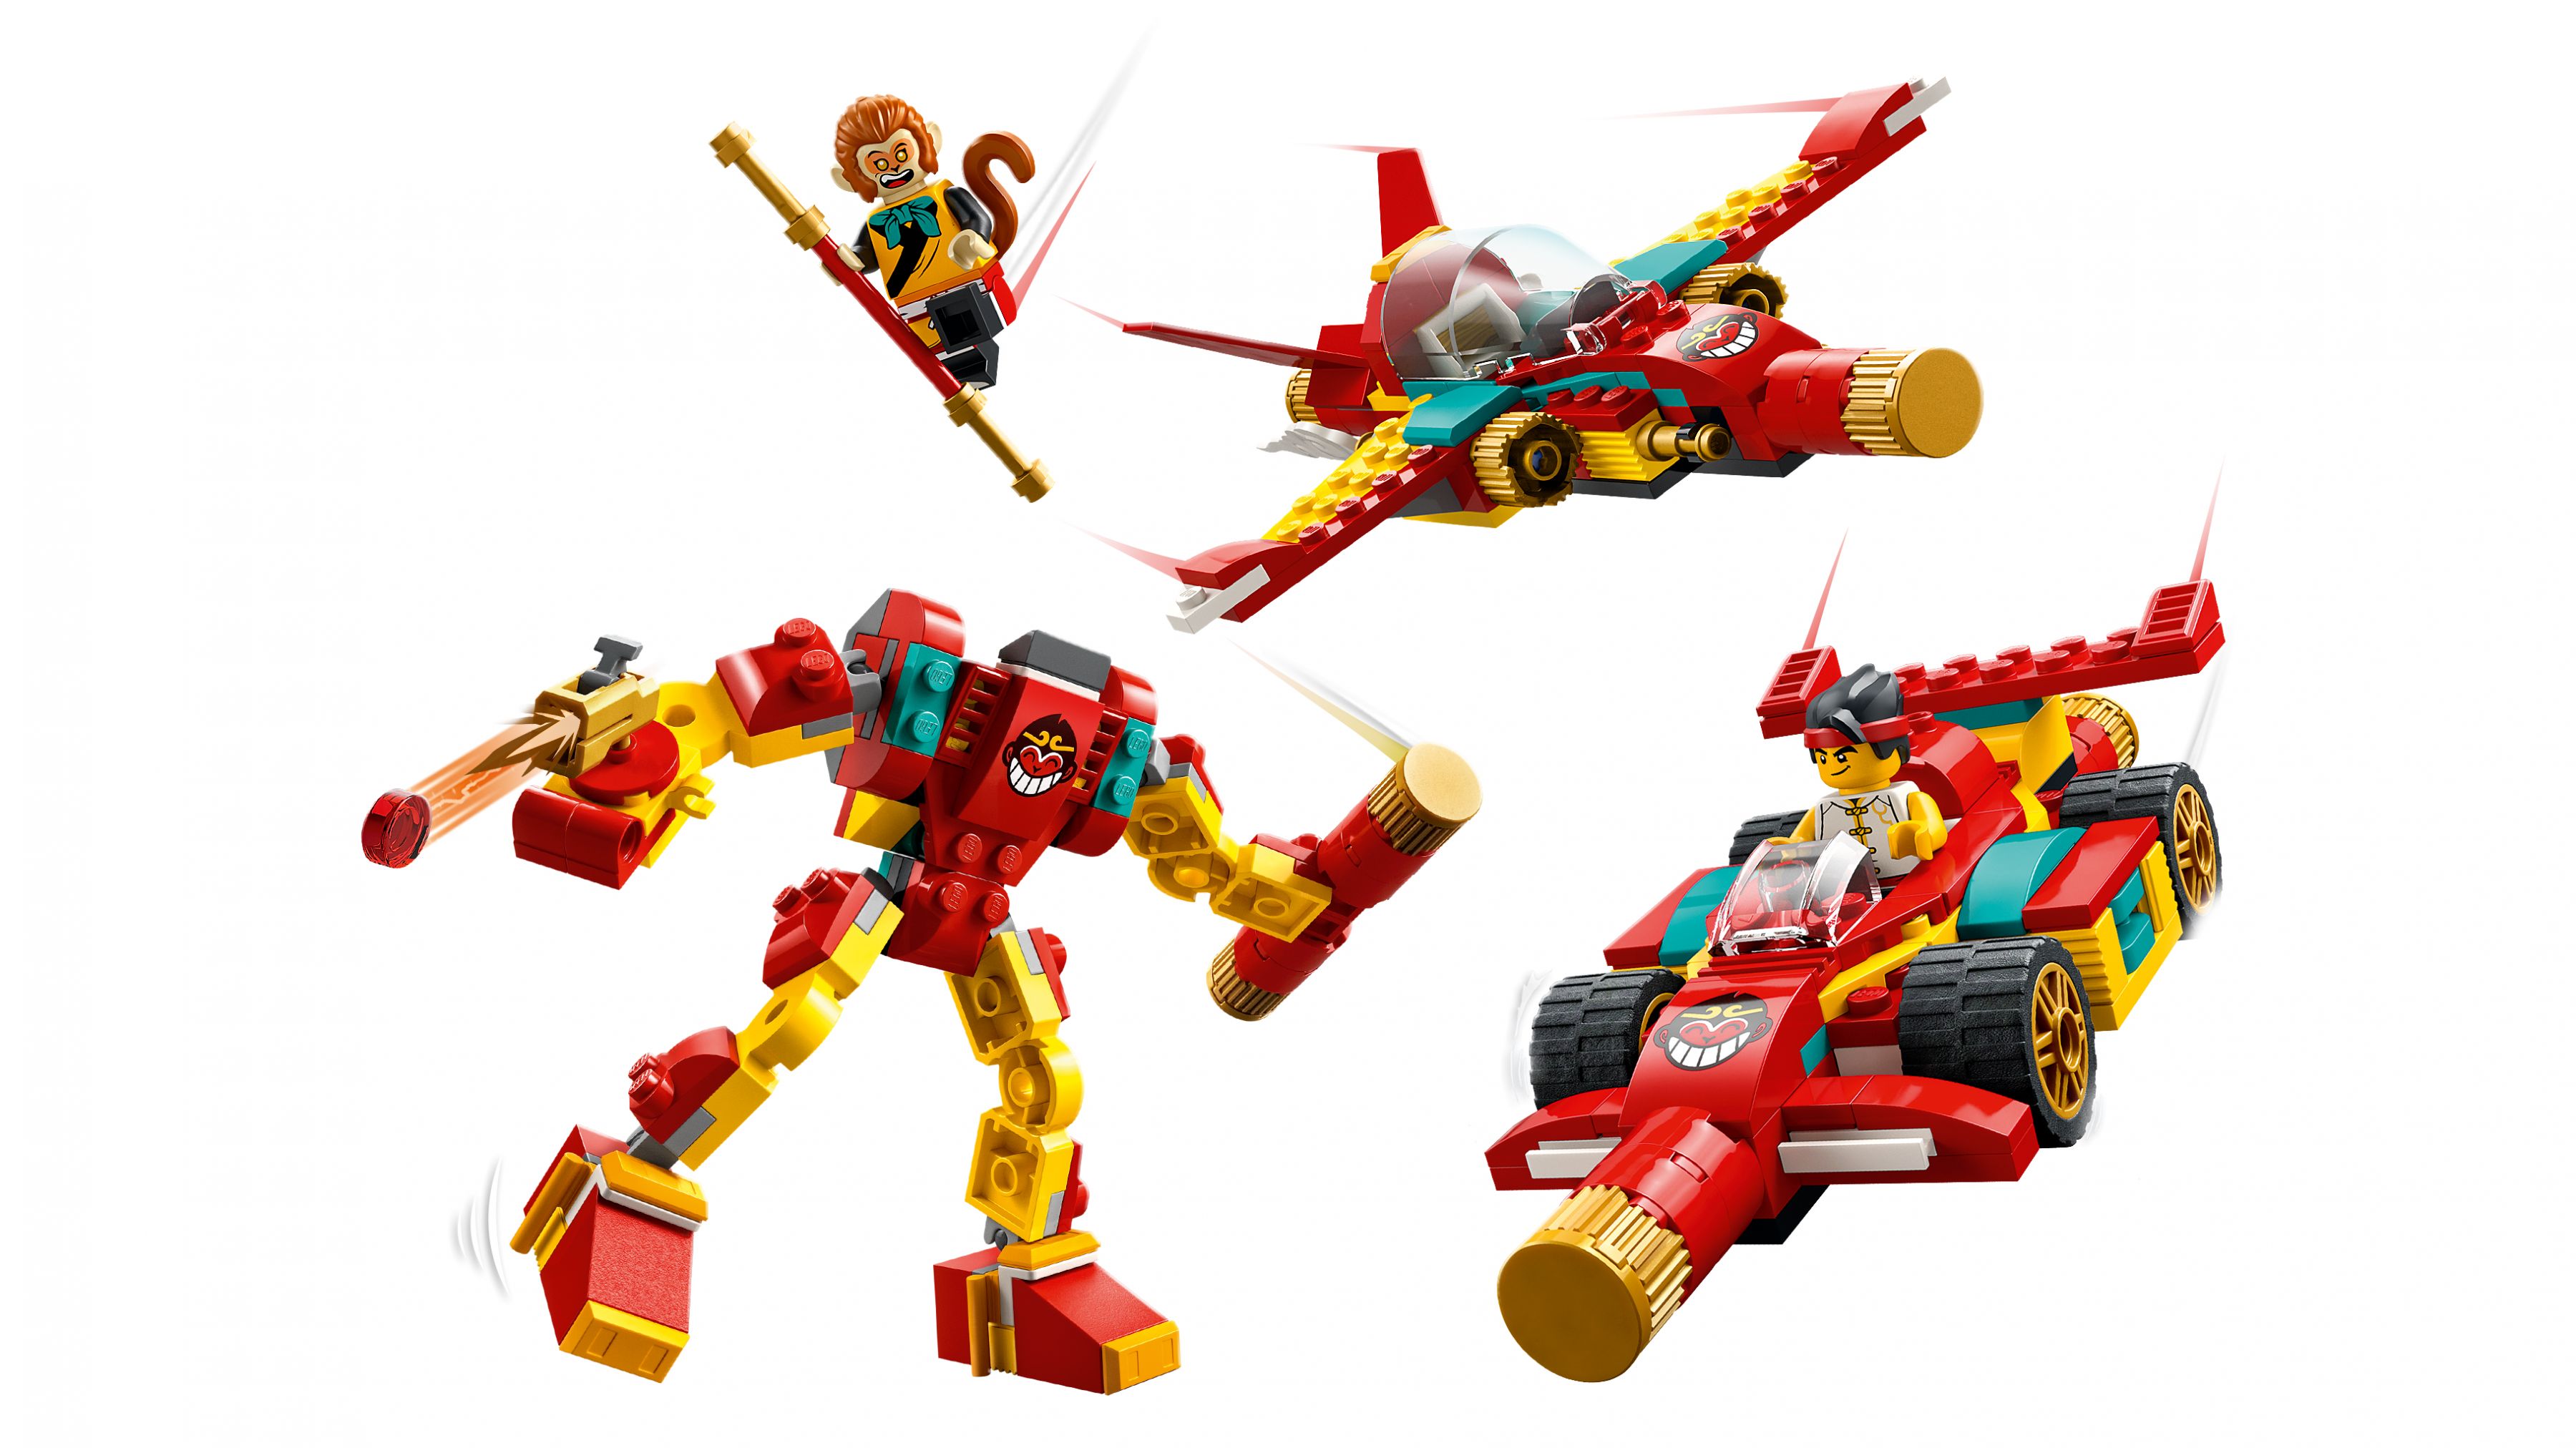 LEGO Monkie Kid 80030 Monkie Kids magische Maschinen LEGO_80030_WEB_PRI_NOBG.jpg